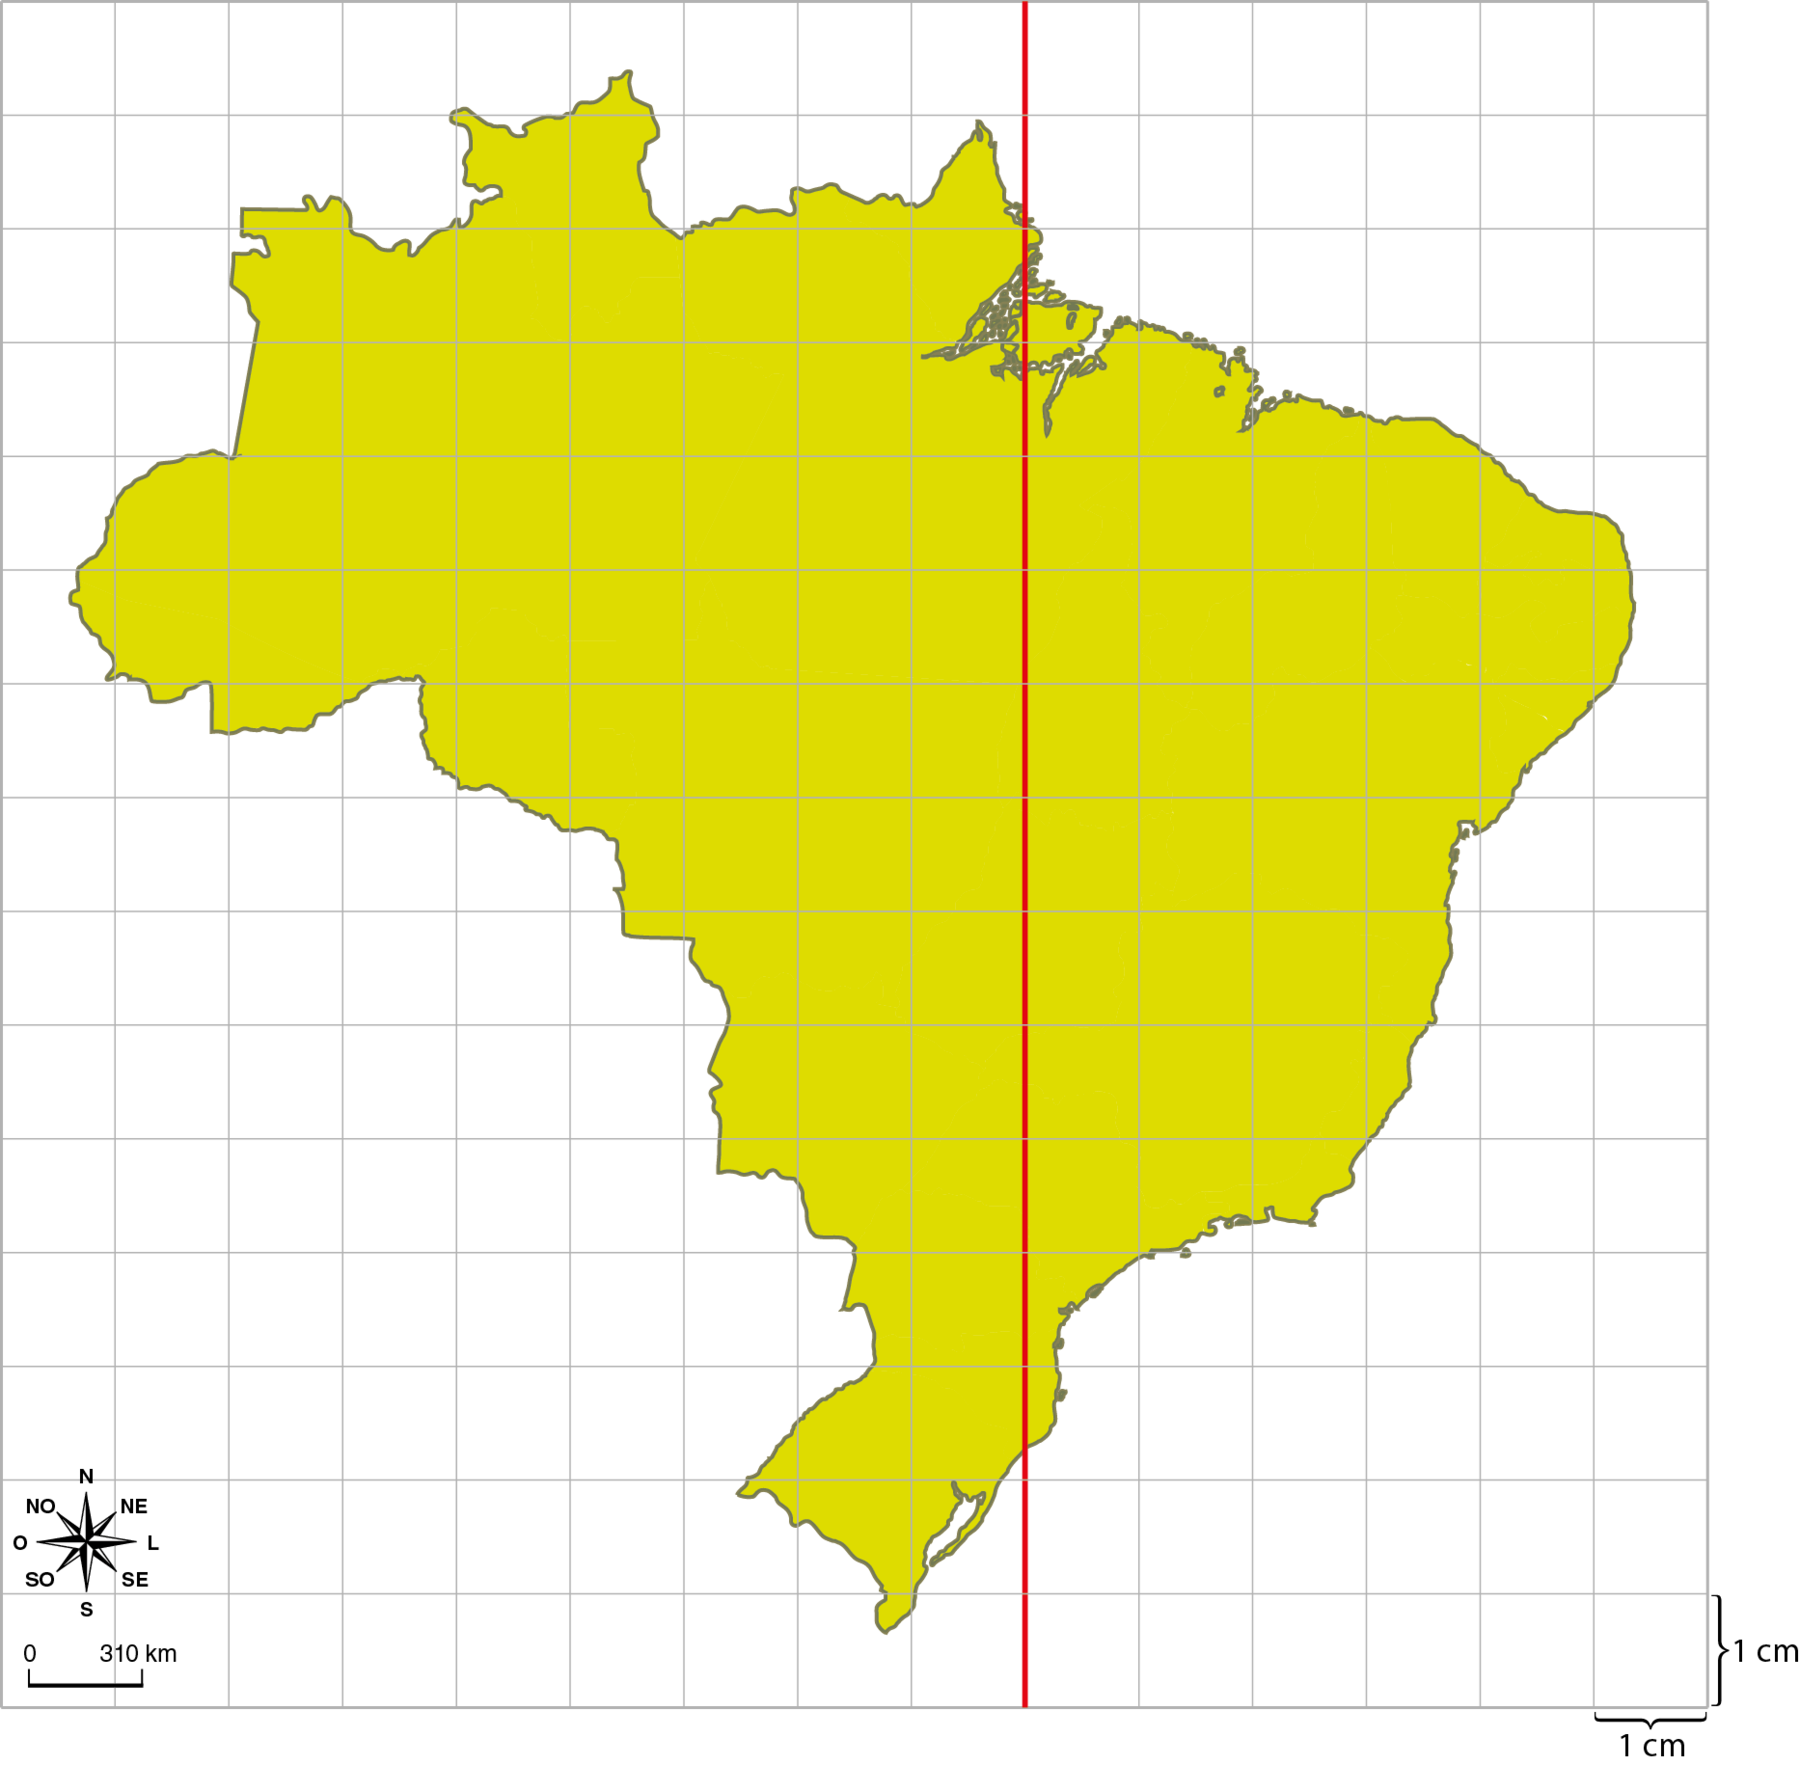 Ilustração. Malha quadriculada dividida em 15 linhas e 15 colunas. Sobre a malha, mapa do Brasil. Linha vermelha vertical de uma extremidade a outra da malha, entre a nona e a décima coluna. Cada quadradinho mede 1 centímetro por 1 centímetro. No canto inferior esquerdo, rosa dos ventos e escala de 0 a 310 quilômetros.